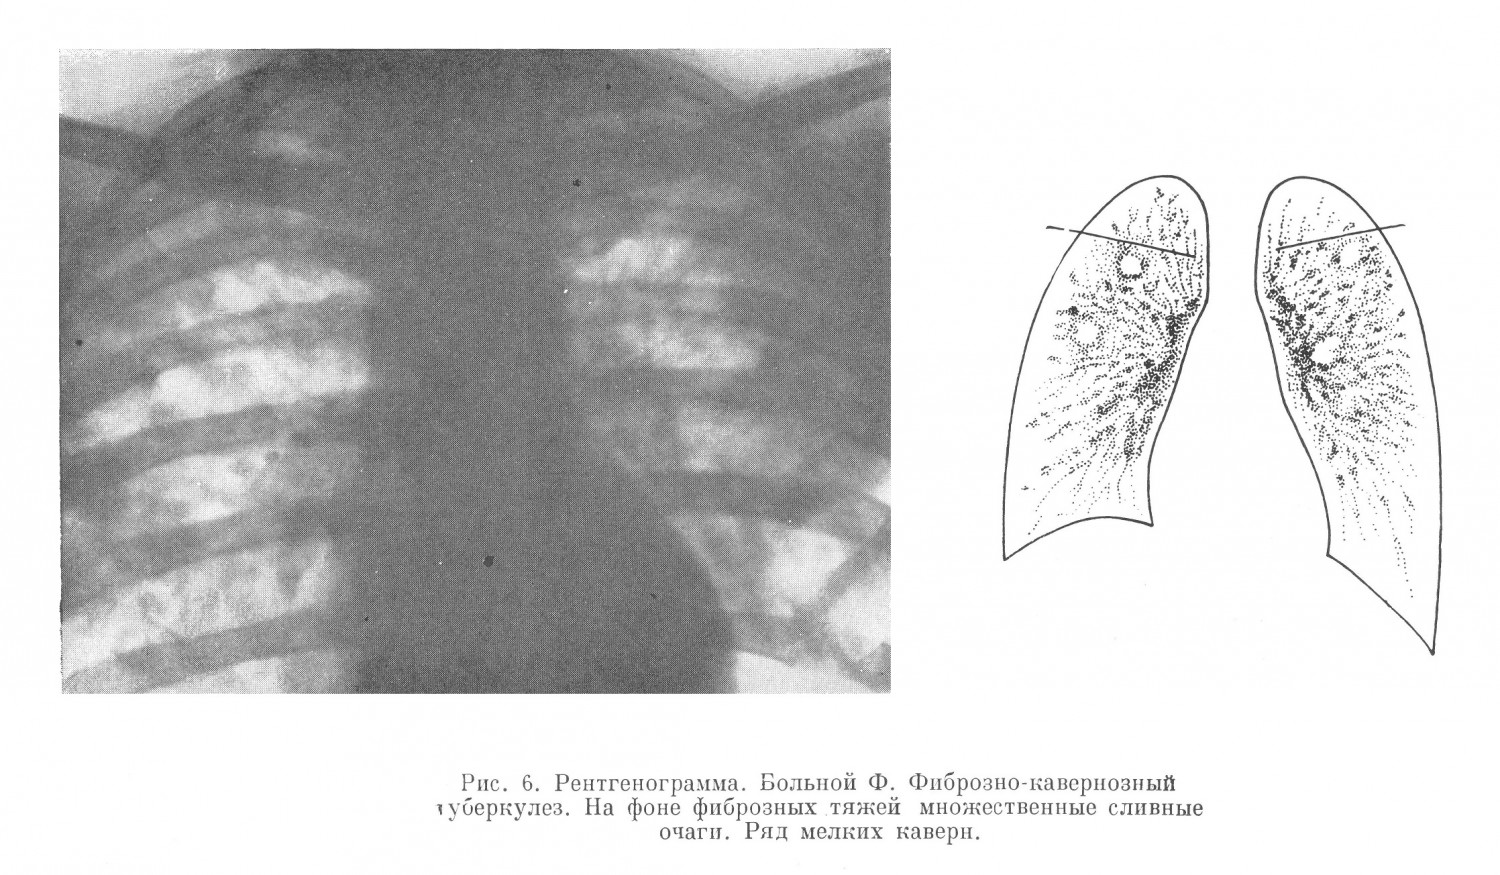 При рентгеноскопии в обоих легких обнаружены грубые фиброзно-тяжевидные изменения с множеством крупных сливных очагов